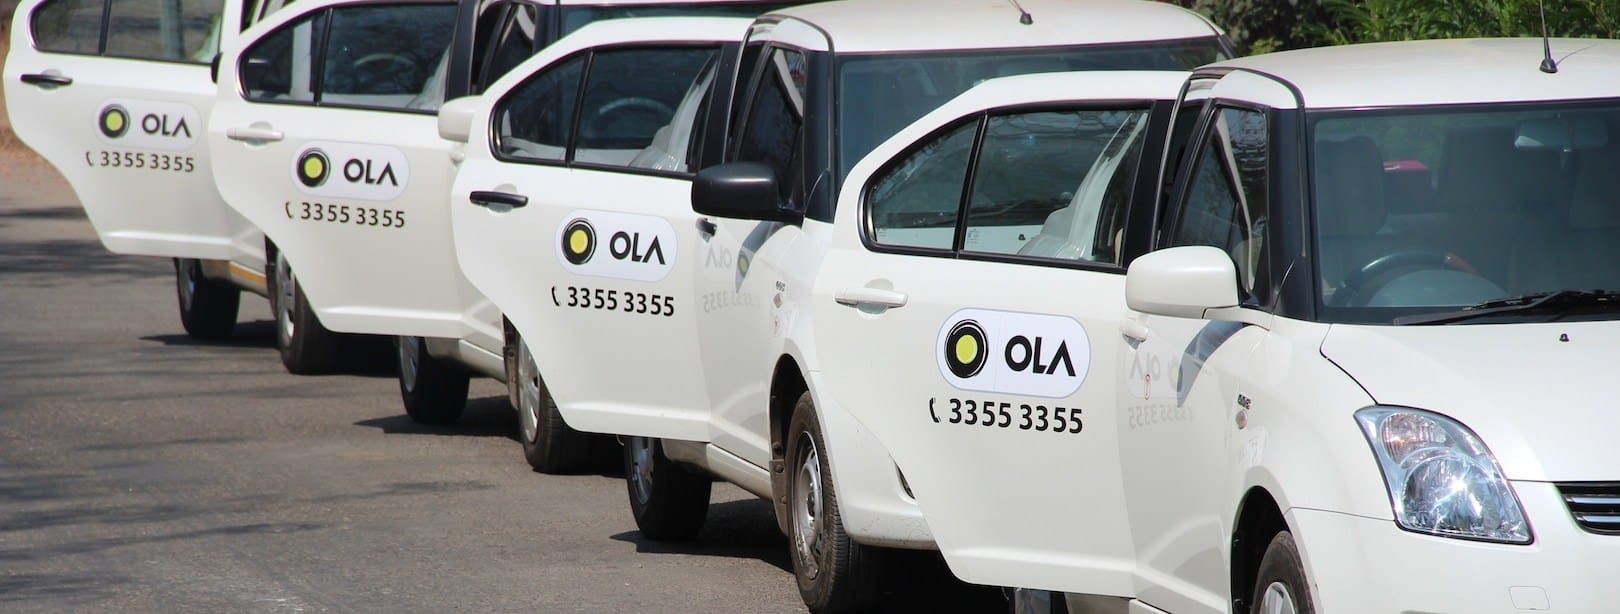 Ola launch ev service in London